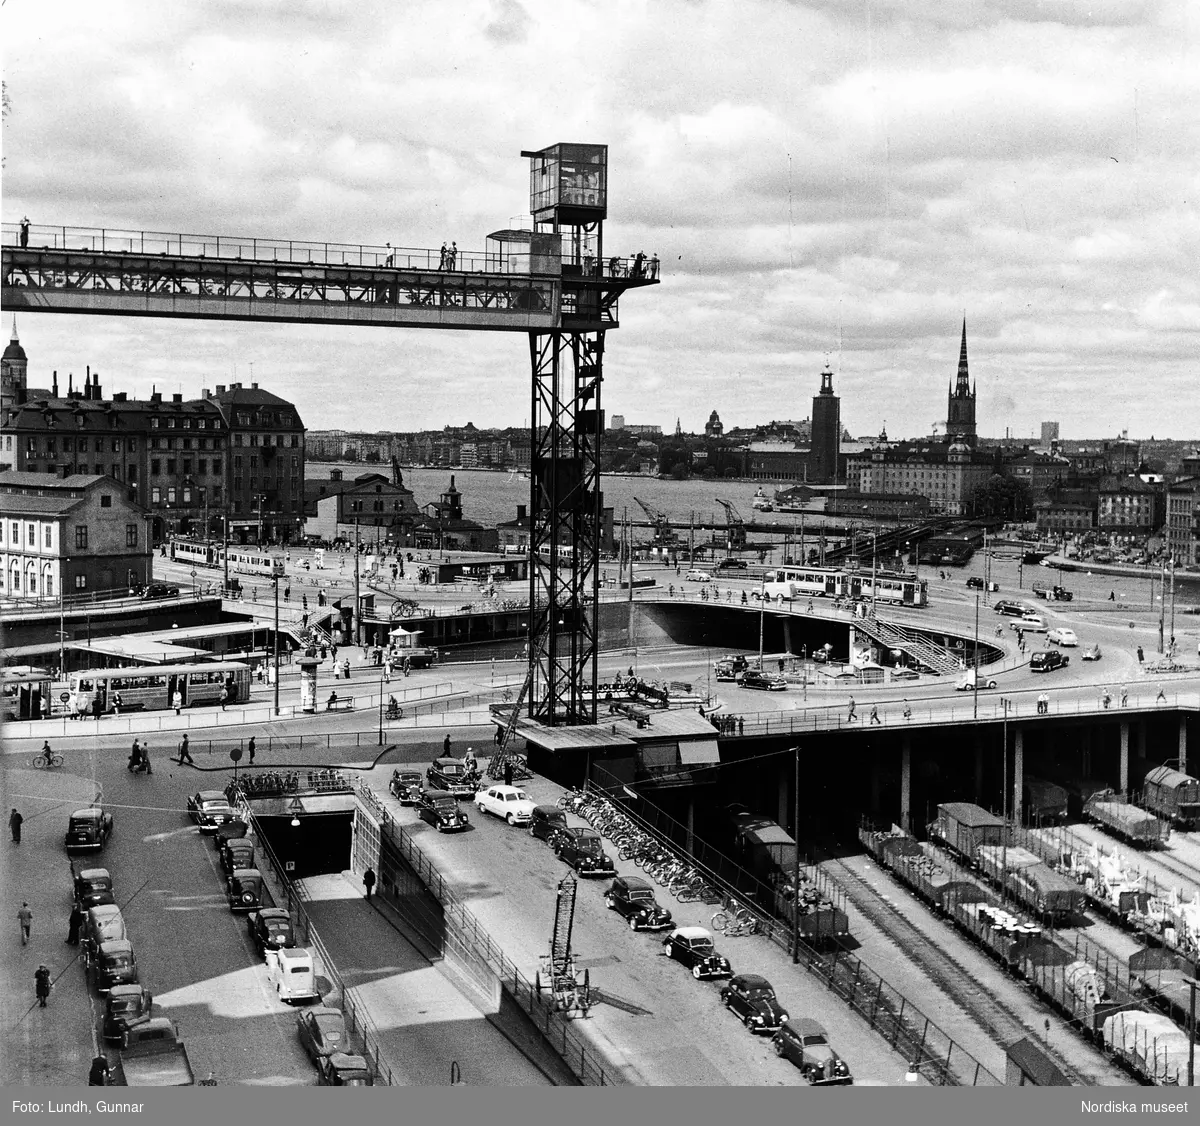 Vy över Slussen och Katarinahissen, Stockholm, år 1951. Parkerade bilar, cyklar, järnvägsvagnar i förgrunden.